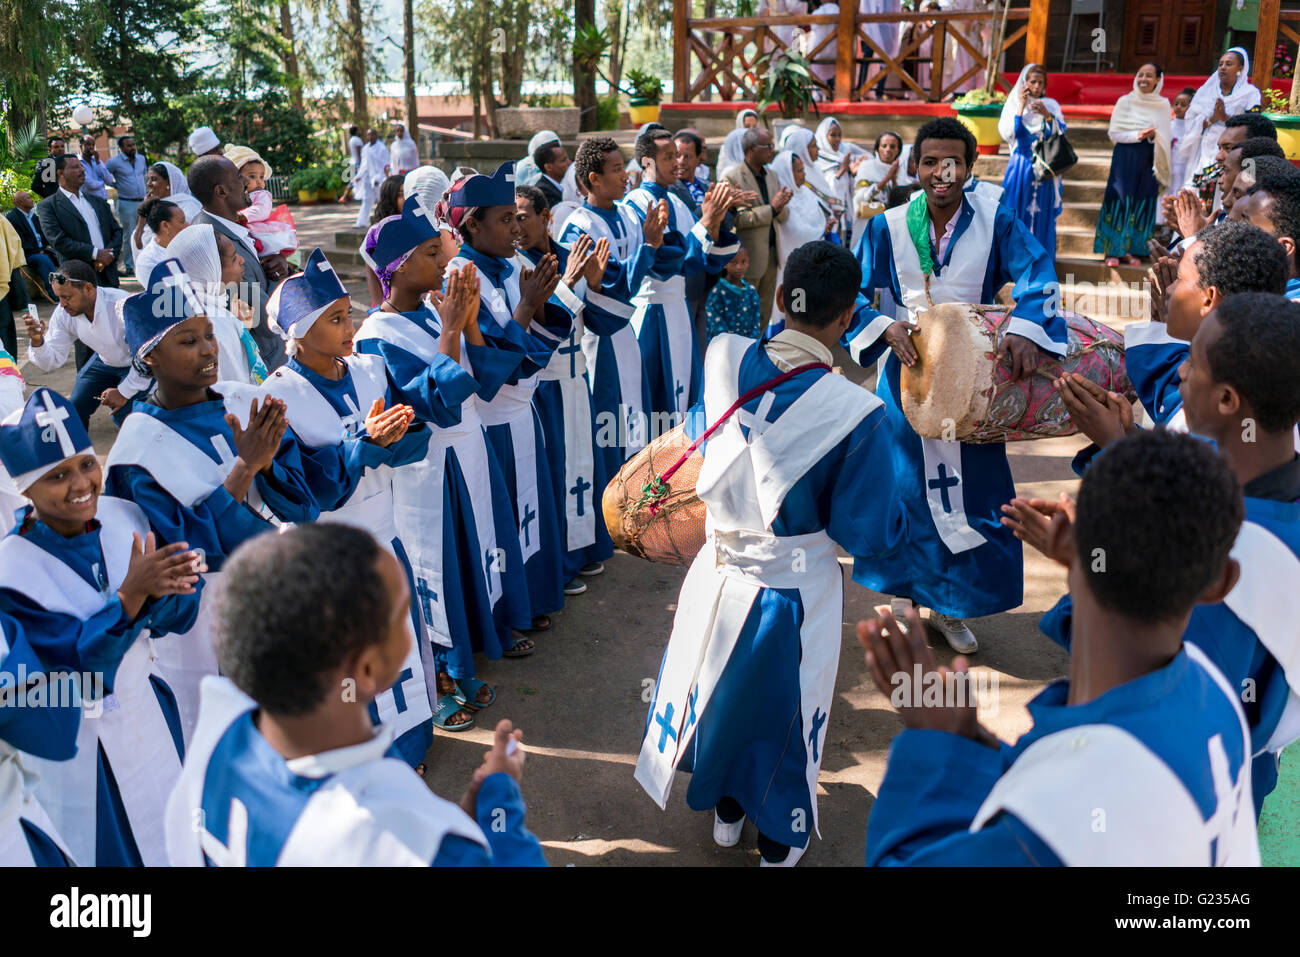 ADDIS ABEBA, Ethiopie - 21 mai : un jeune membre de l'église éthiopienne orthodoxe choeur chanter et chanter accompagné par un tambour lors d'une procession colorée le 21 mai 2016 à Addis Abeba, Ethiopie Banque D'Images